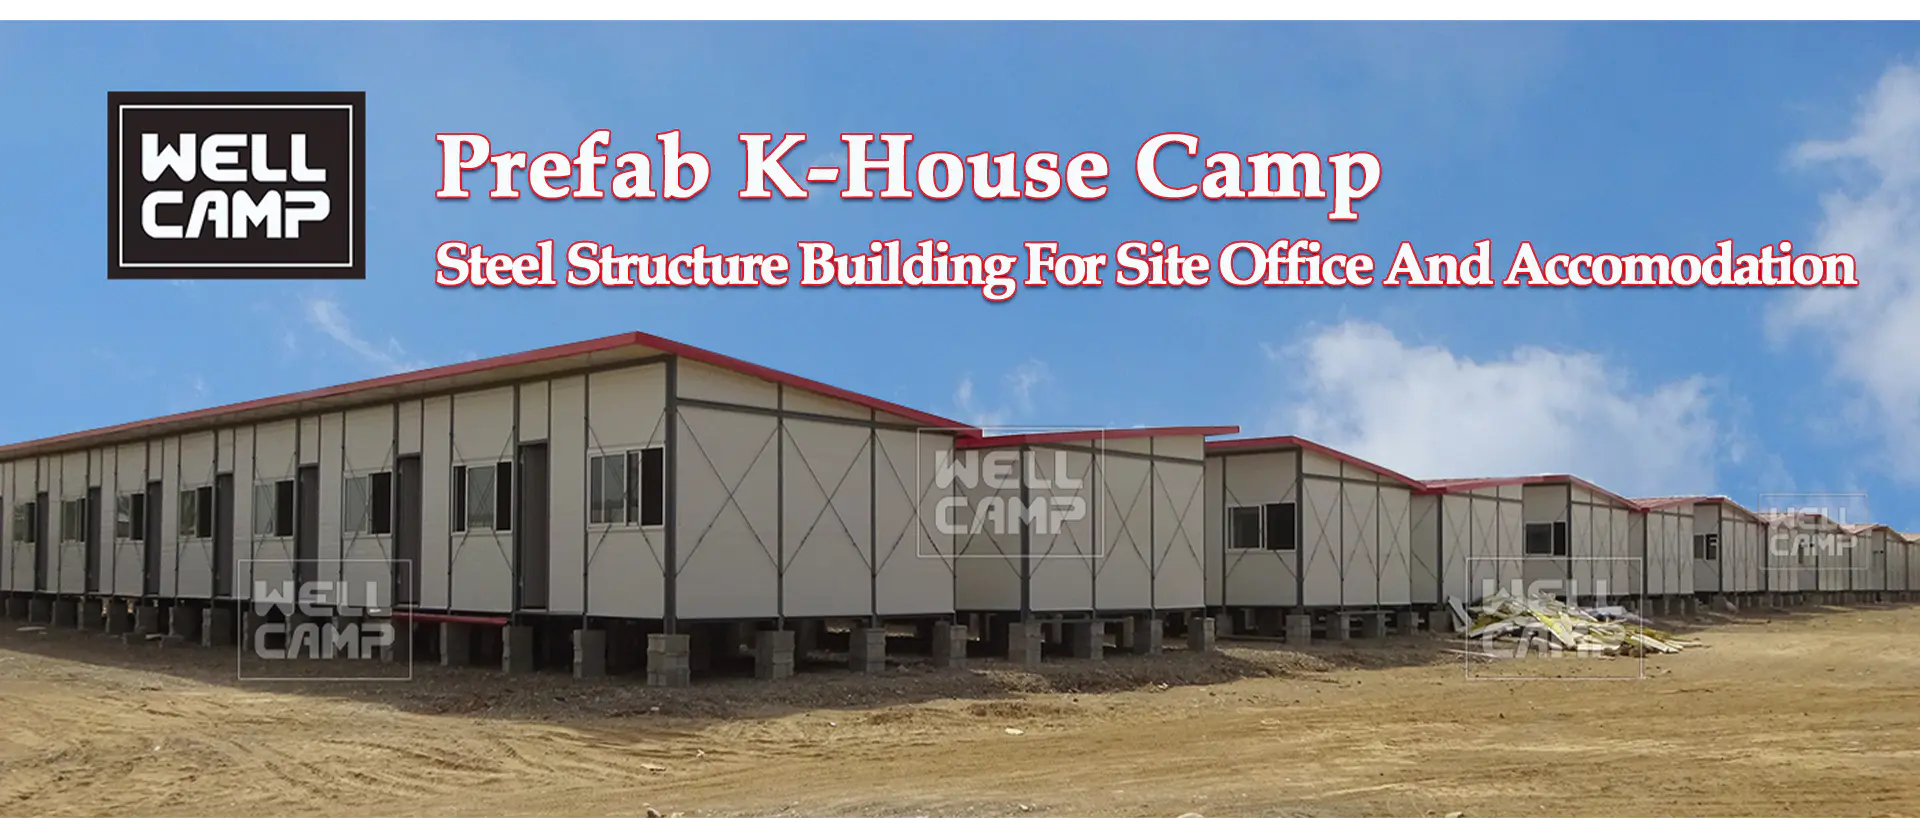 Prefab K-House Camp